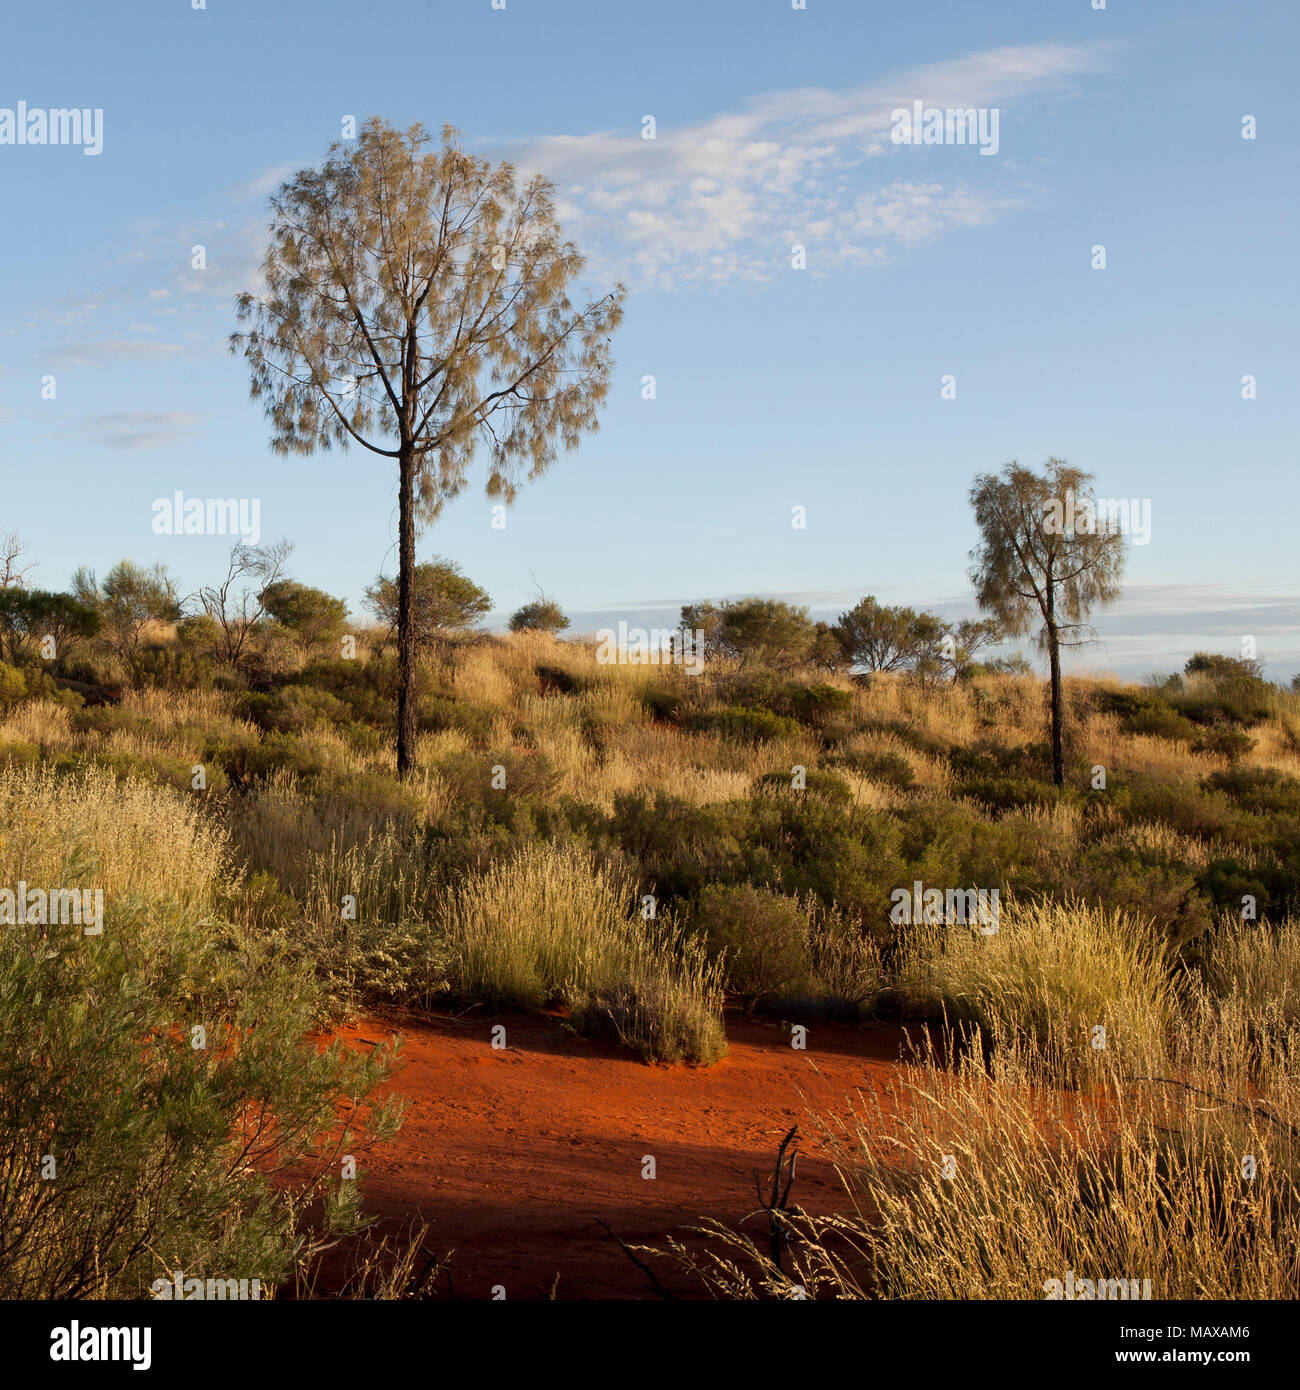 Tôt le matin, vue sur les arbres de la brousse près de ares Australie Territoire du nord rock Banque D'Images